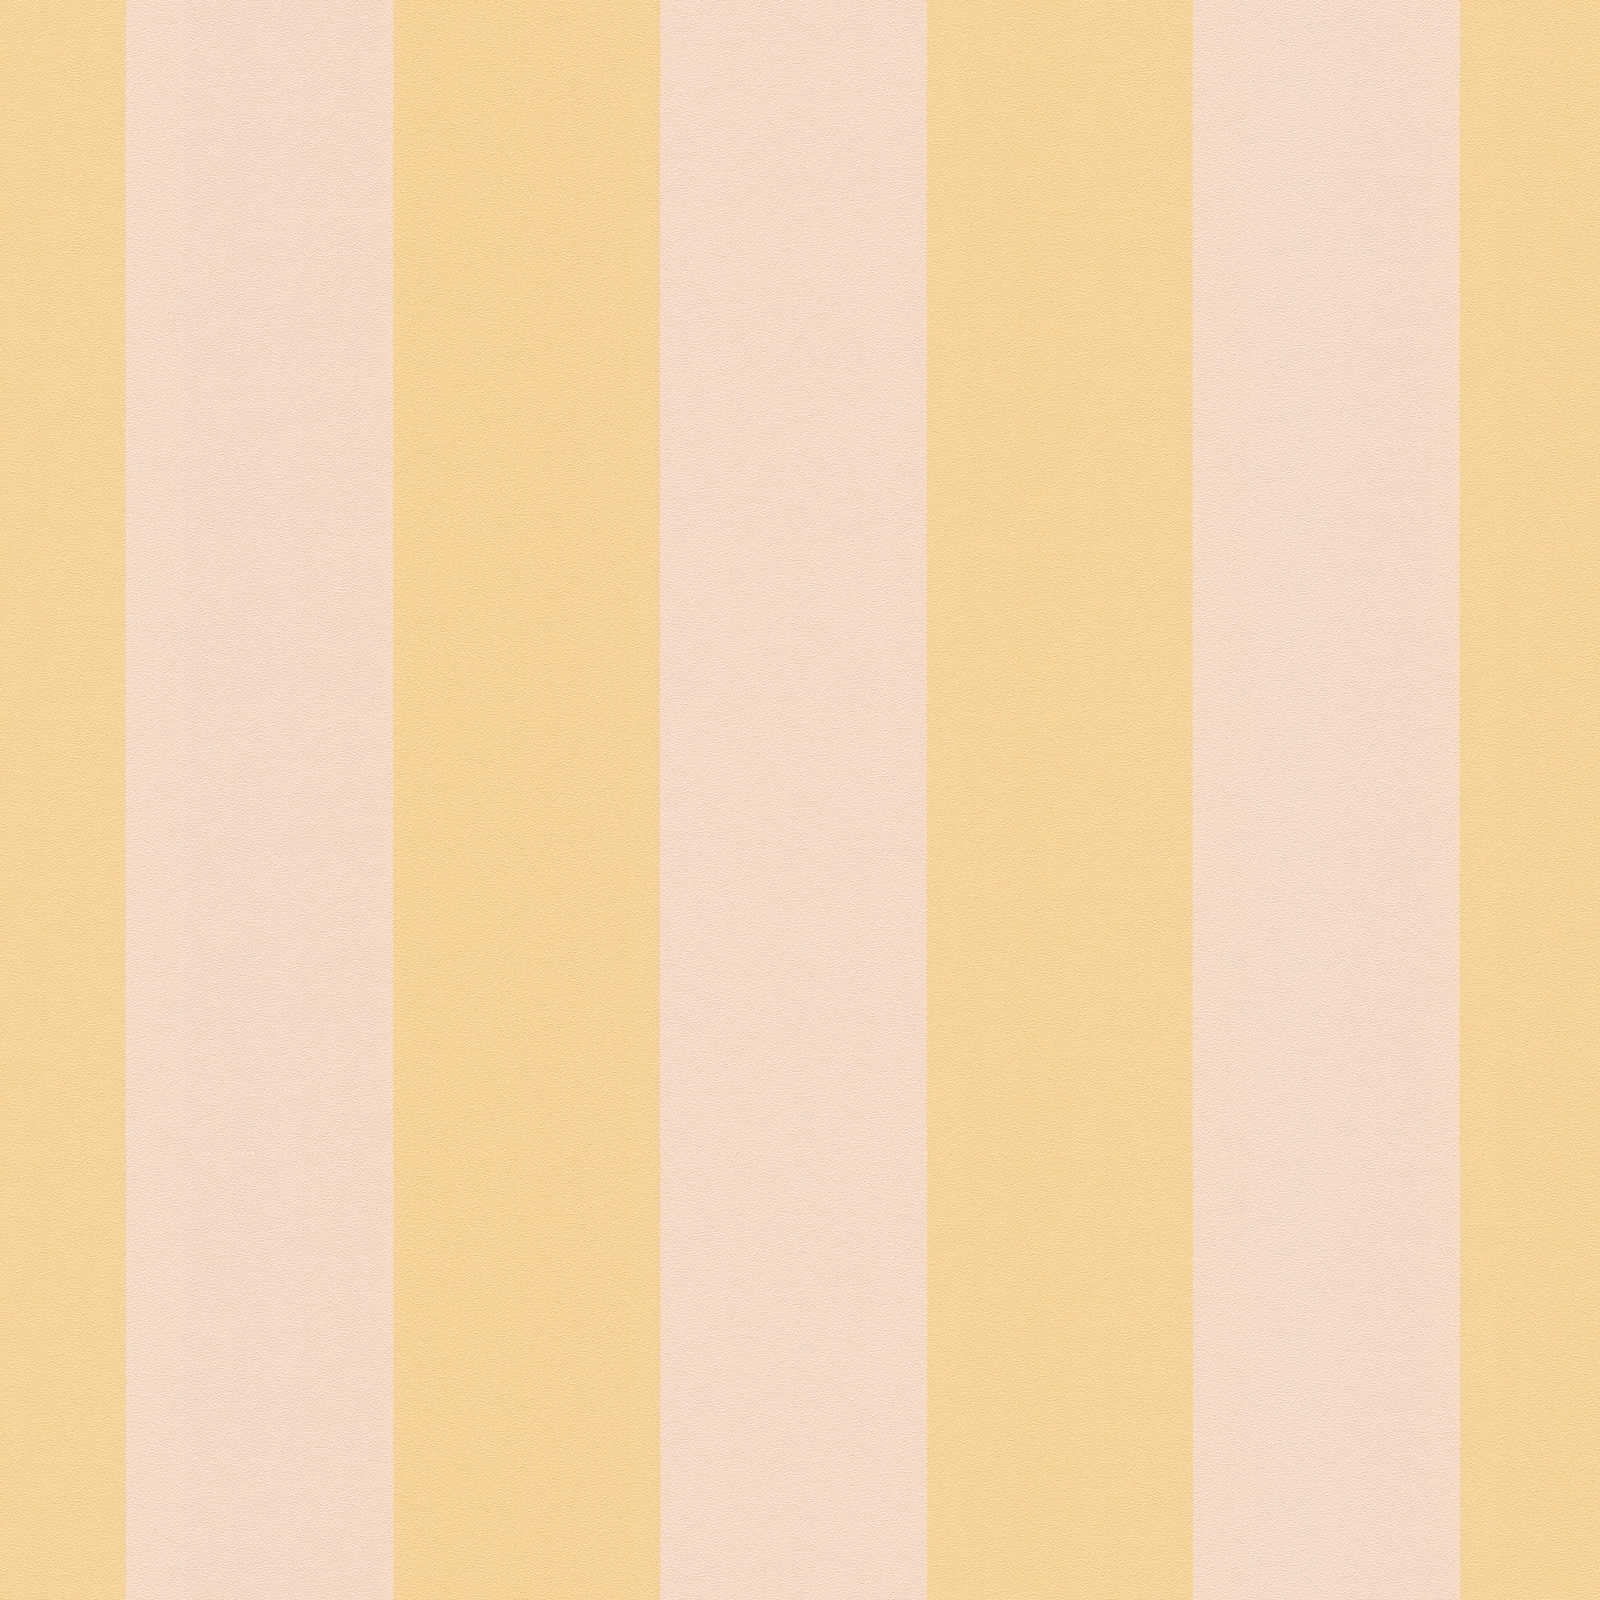             Carta da parati in tessuto non tessuto con strisce a blocchi in tonalità tenui - arancio, rosa
        